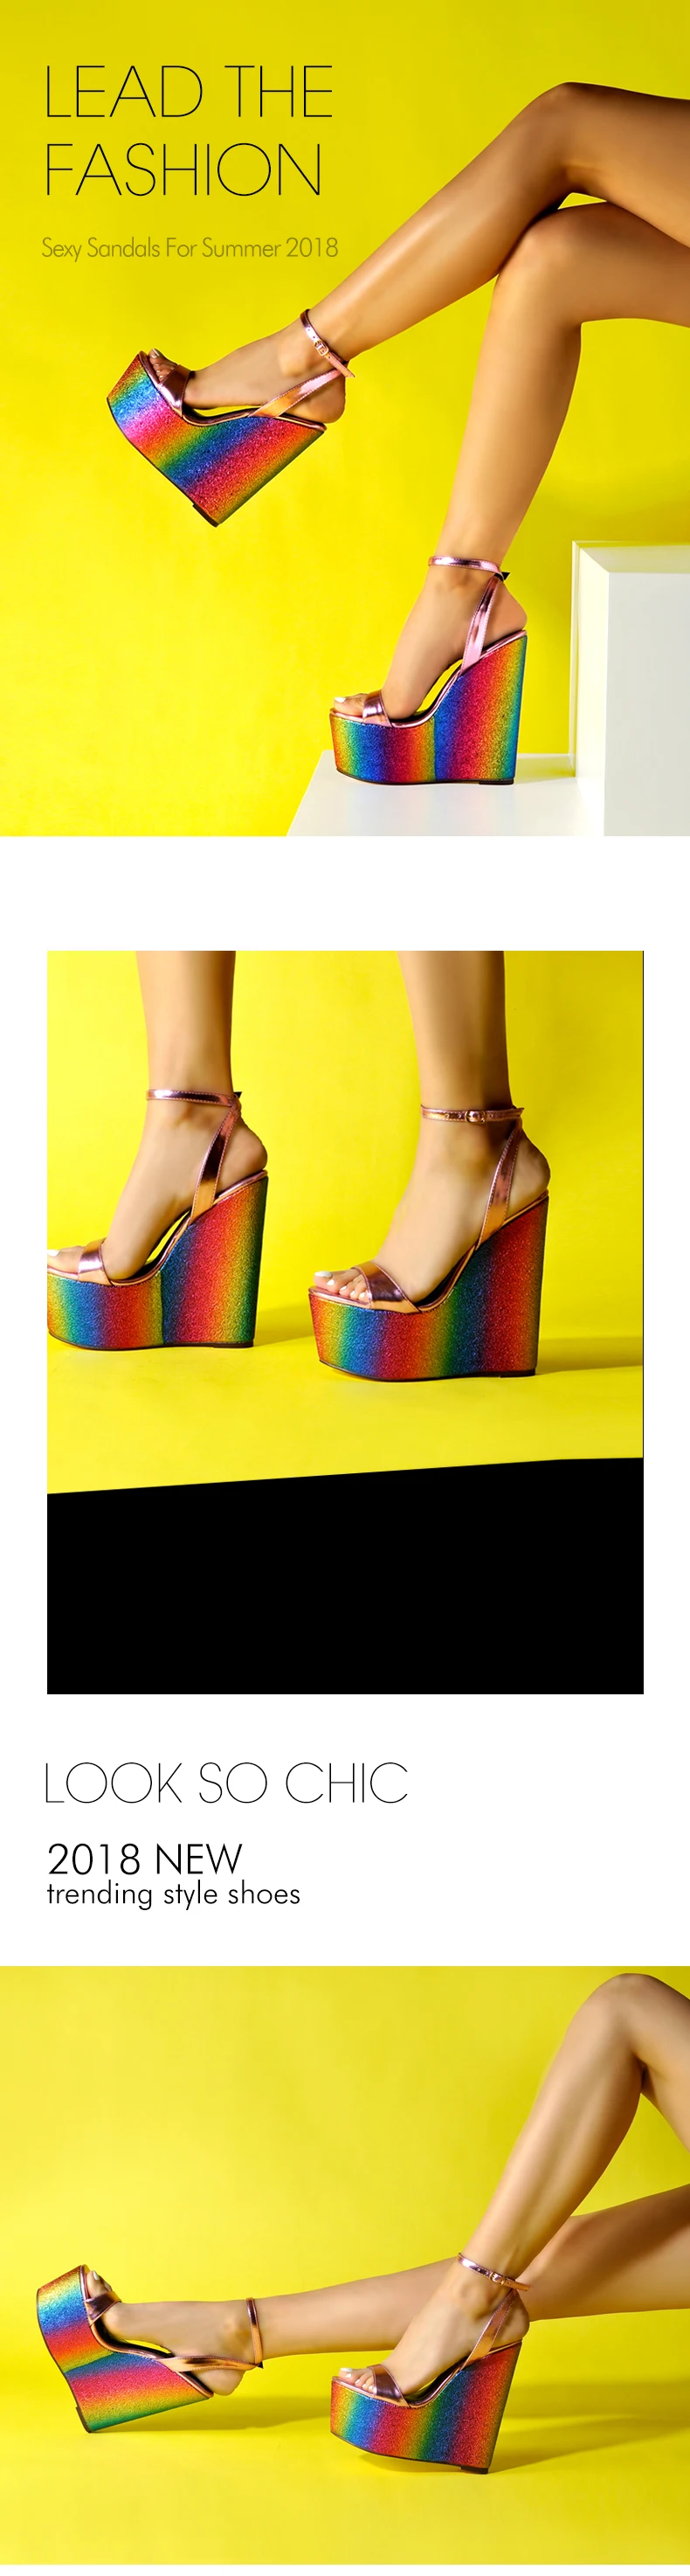 Sinsaut обувь Для женщин сандалии платформы сандалии обувь на высоком каблуке Ремешок на щиколотке Радужная обувь на танкетке, женские сандалии под платье, для вечеринки